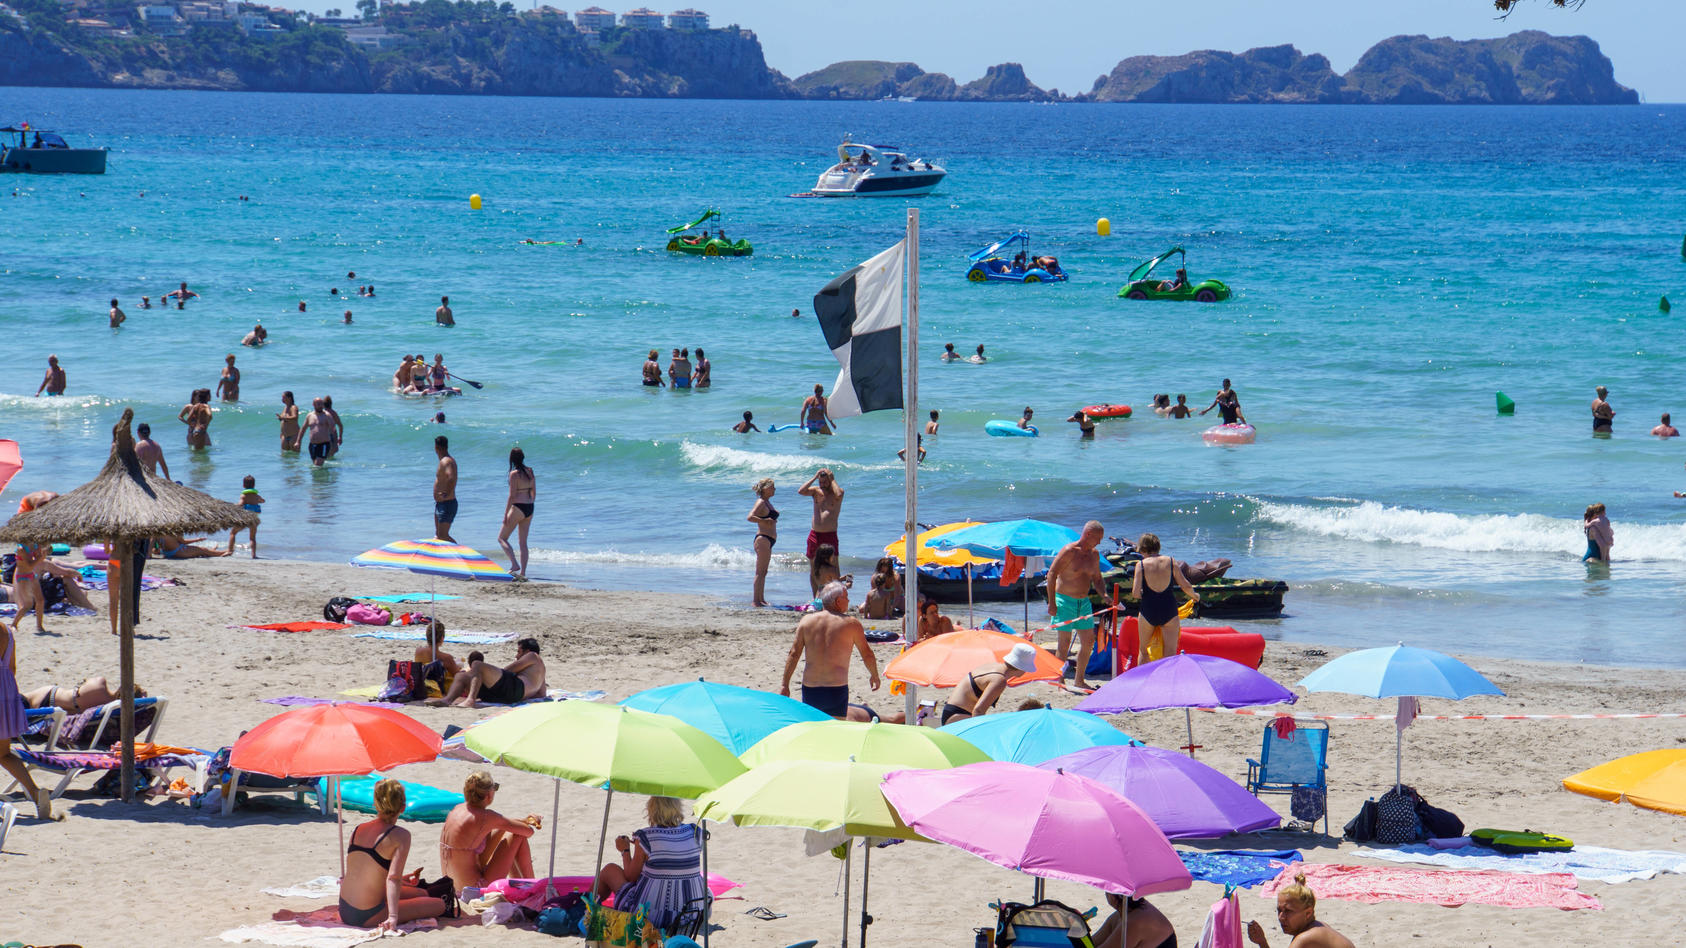 Strand von Paquera auf Mallorca, Spanien, im zweiten Jahr der Corona-Pandemie  (Sommer 2021)